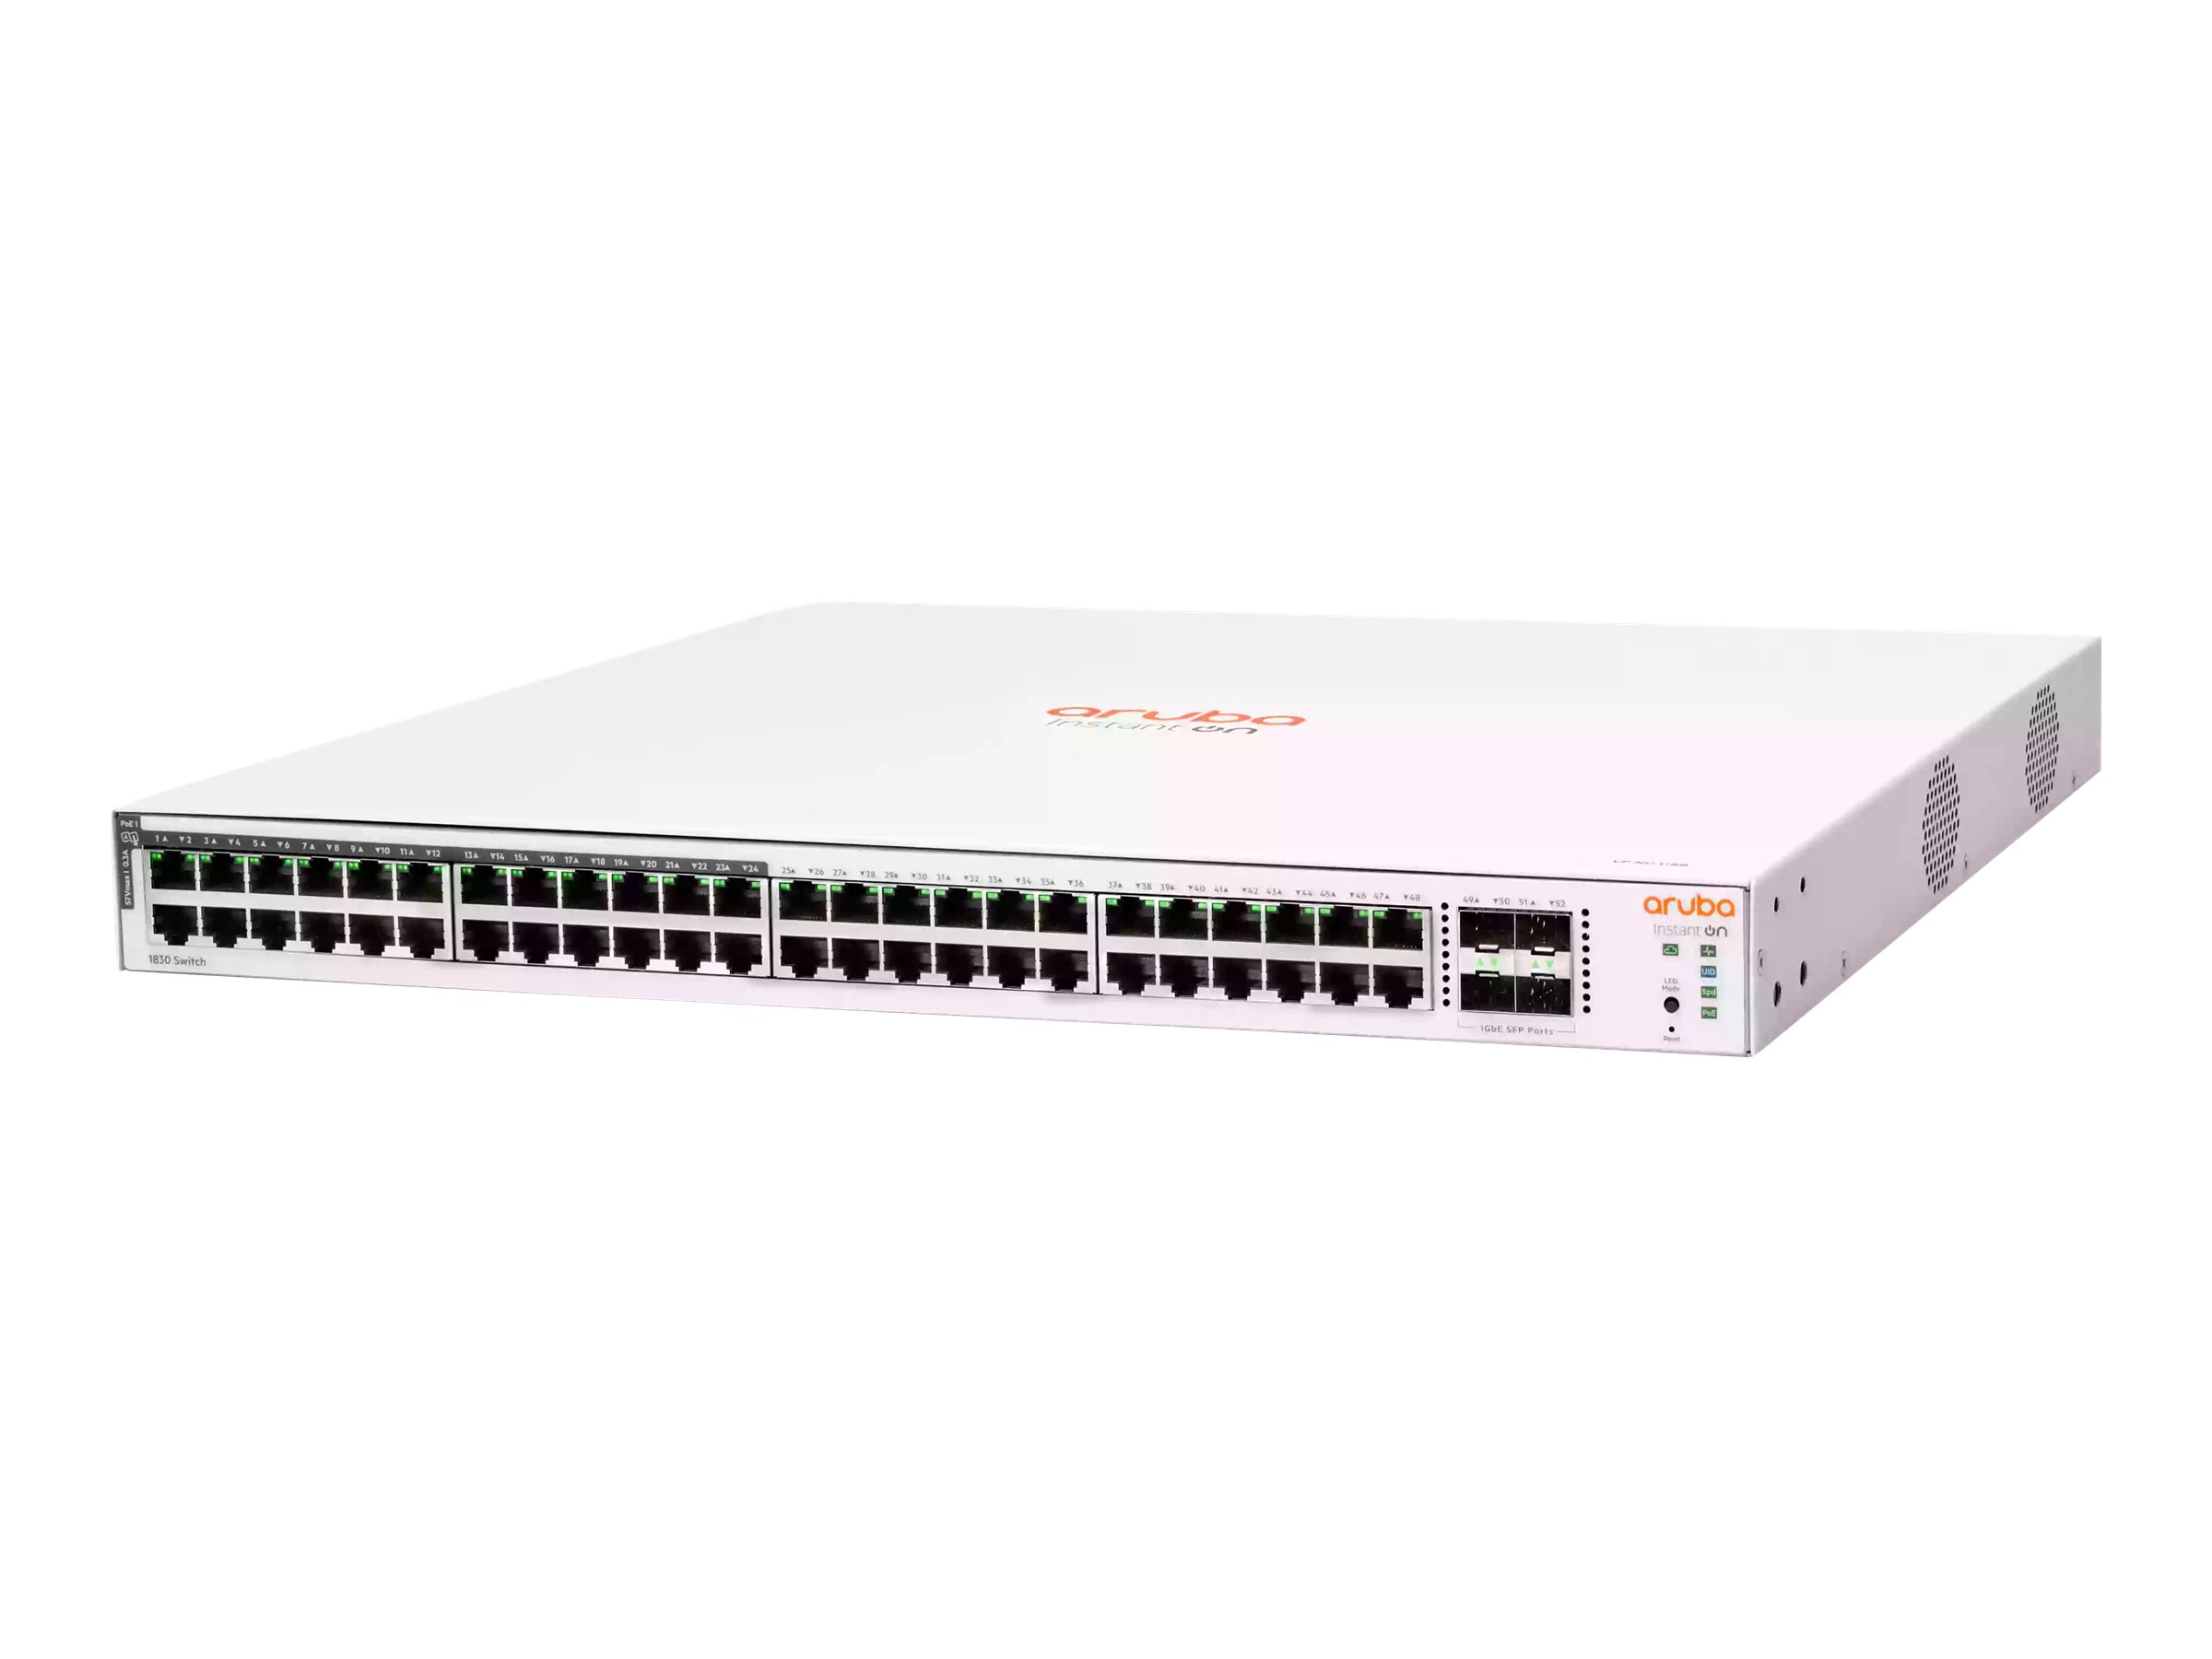 HPE Aruba Instant On 1830 48G 24p Class4 PoE 4SFP 370W Switch - Switch - Smart - 24 x 10/100/1000 + 24 x 10/100/1000 (Po